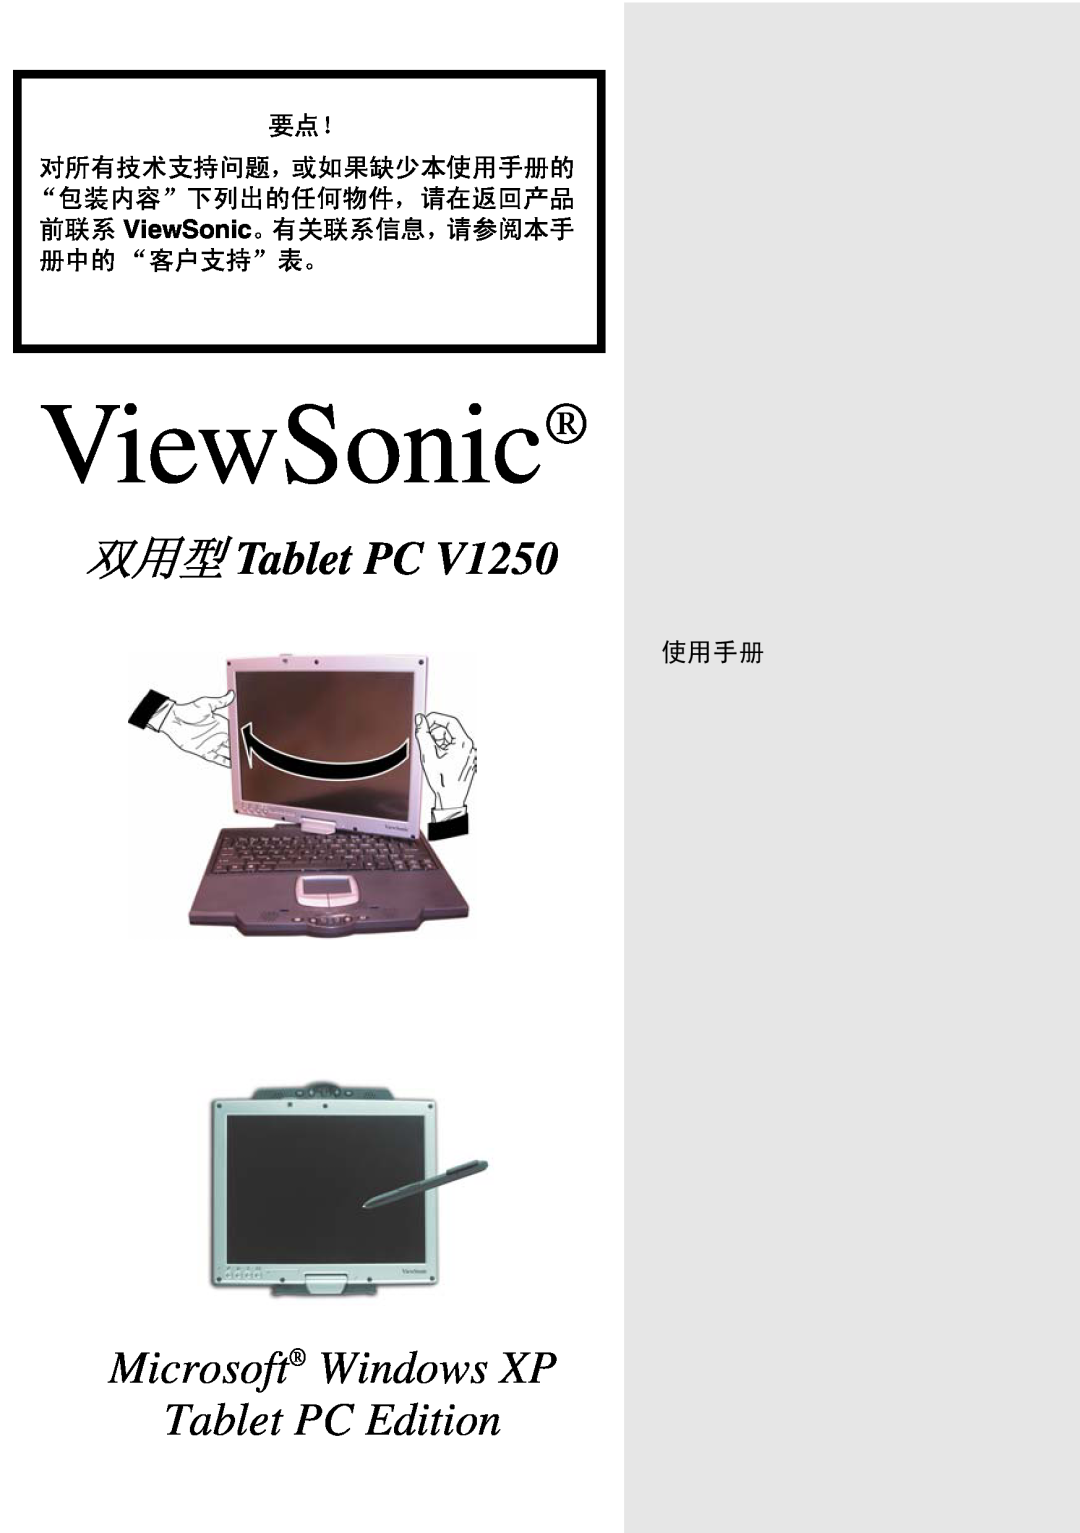 ViewSonic VSMW27922-1W manual ViewSonic, Microsoft Windows XP Tablet PC Edition 